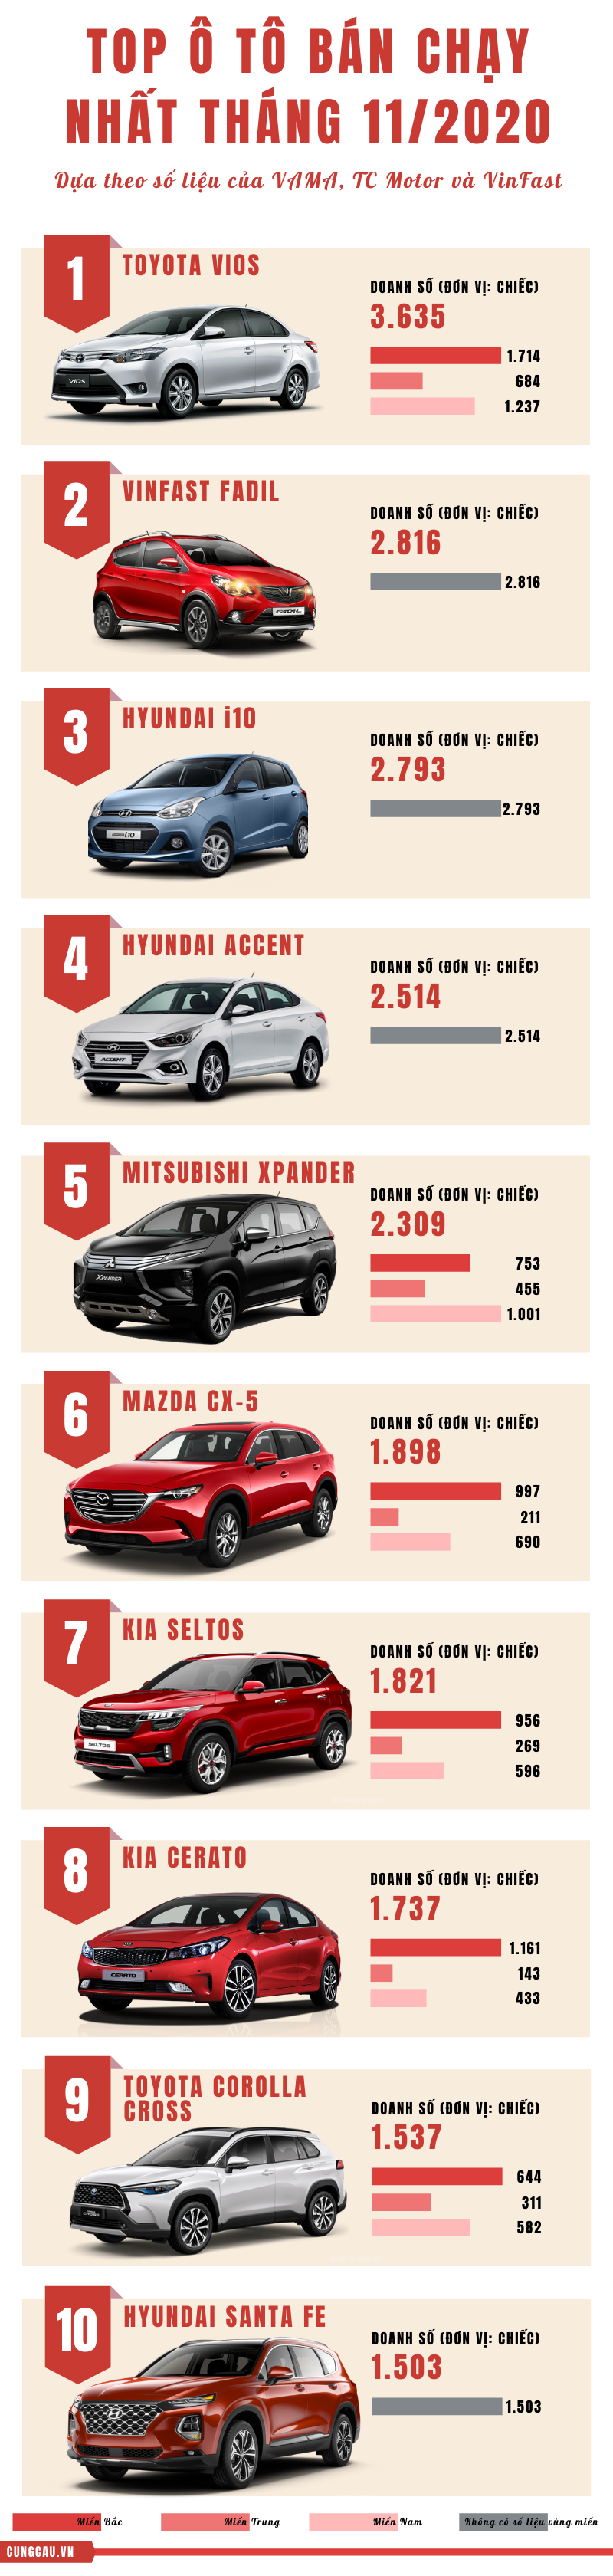 Top 10 ô tô bán chạy nhất tháng 11/2020: VinFast Fadil vươn lên mạnh mẽ